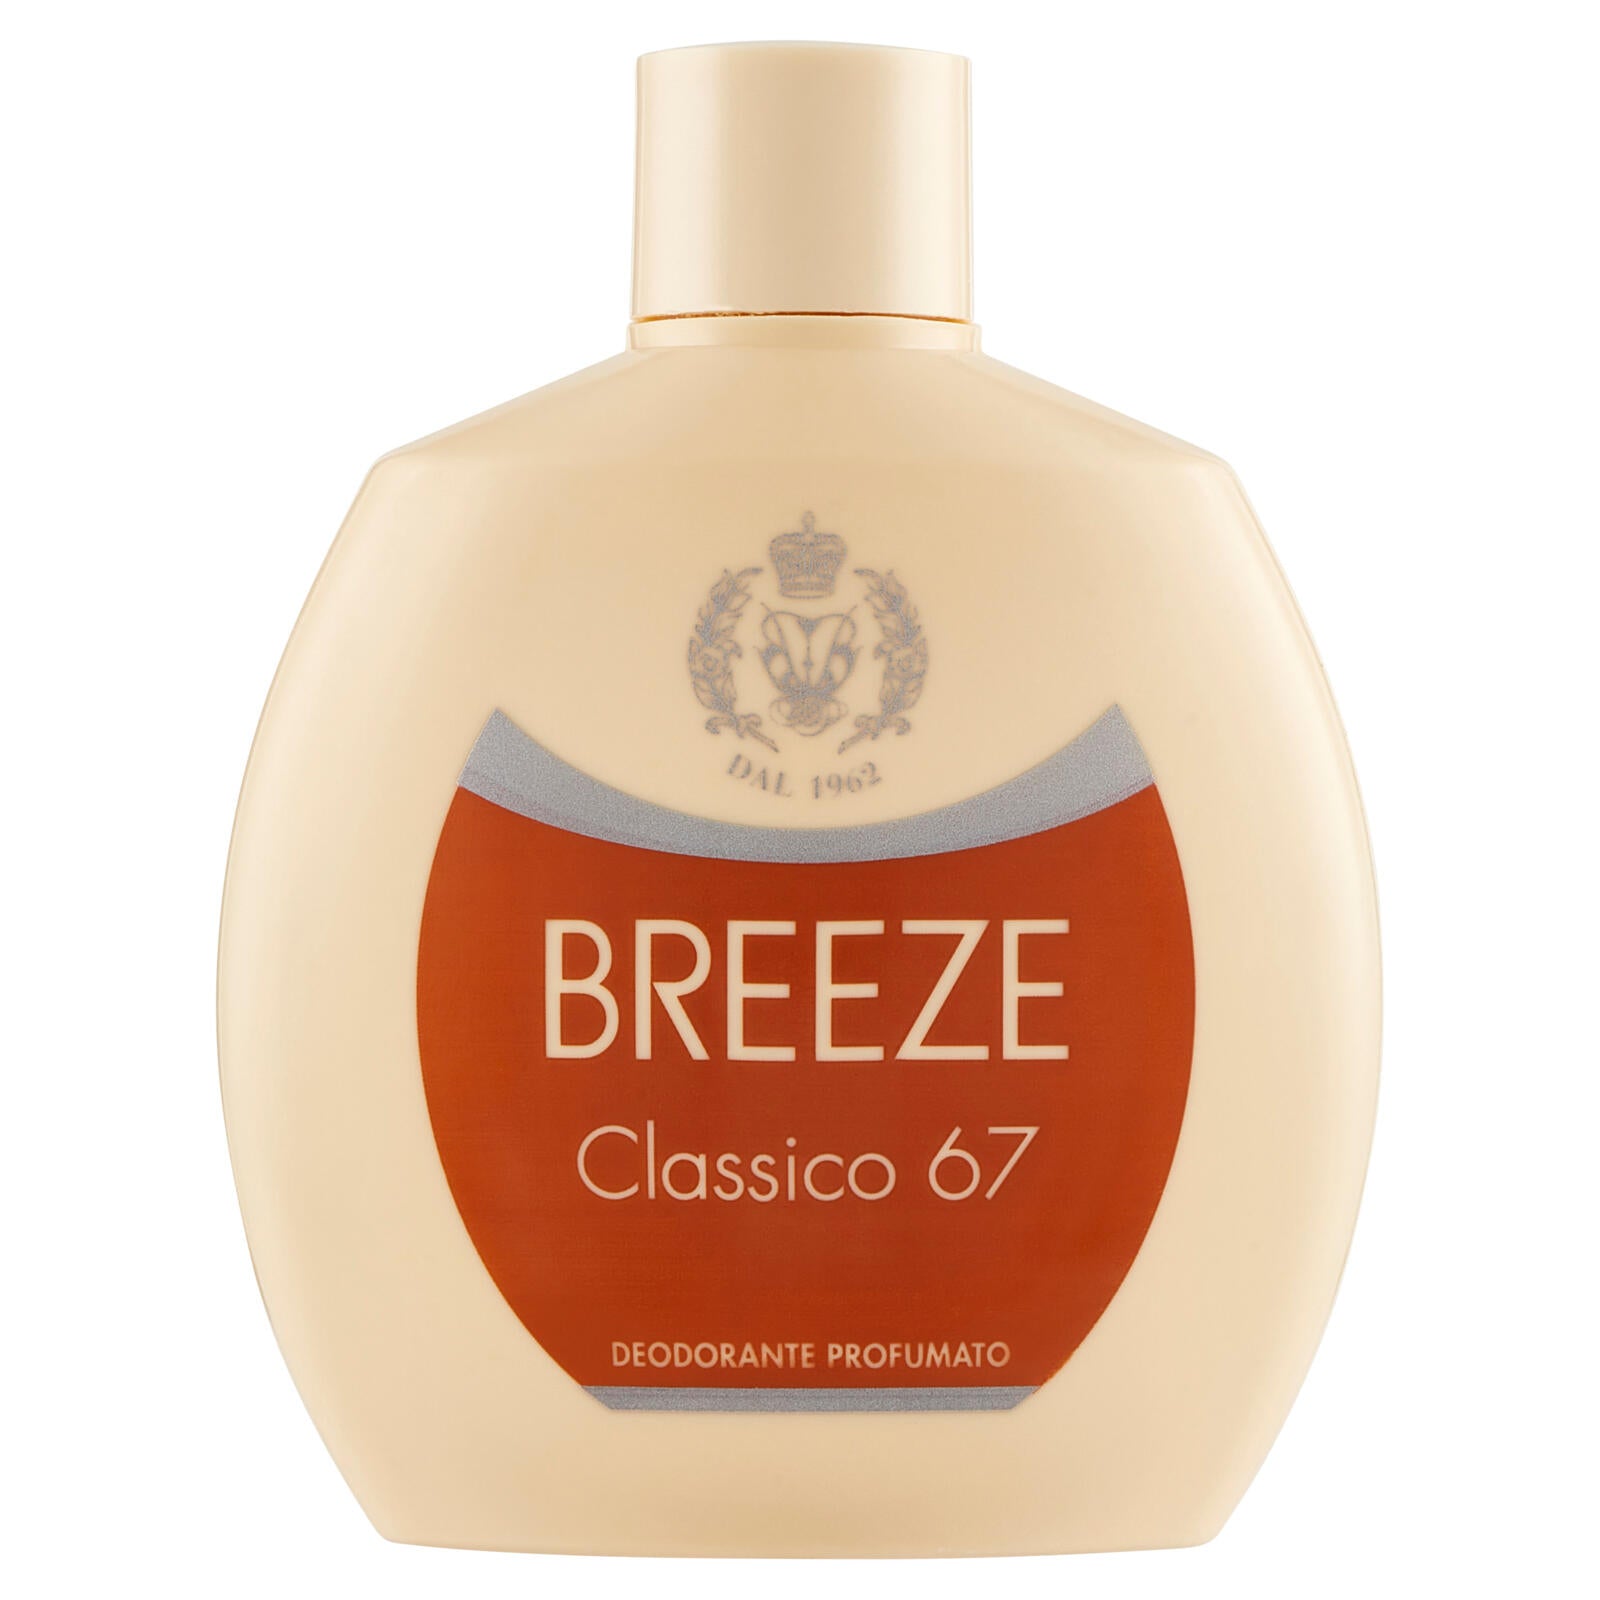 Breeze Classico 67 Deodorante Profumato 100 mL